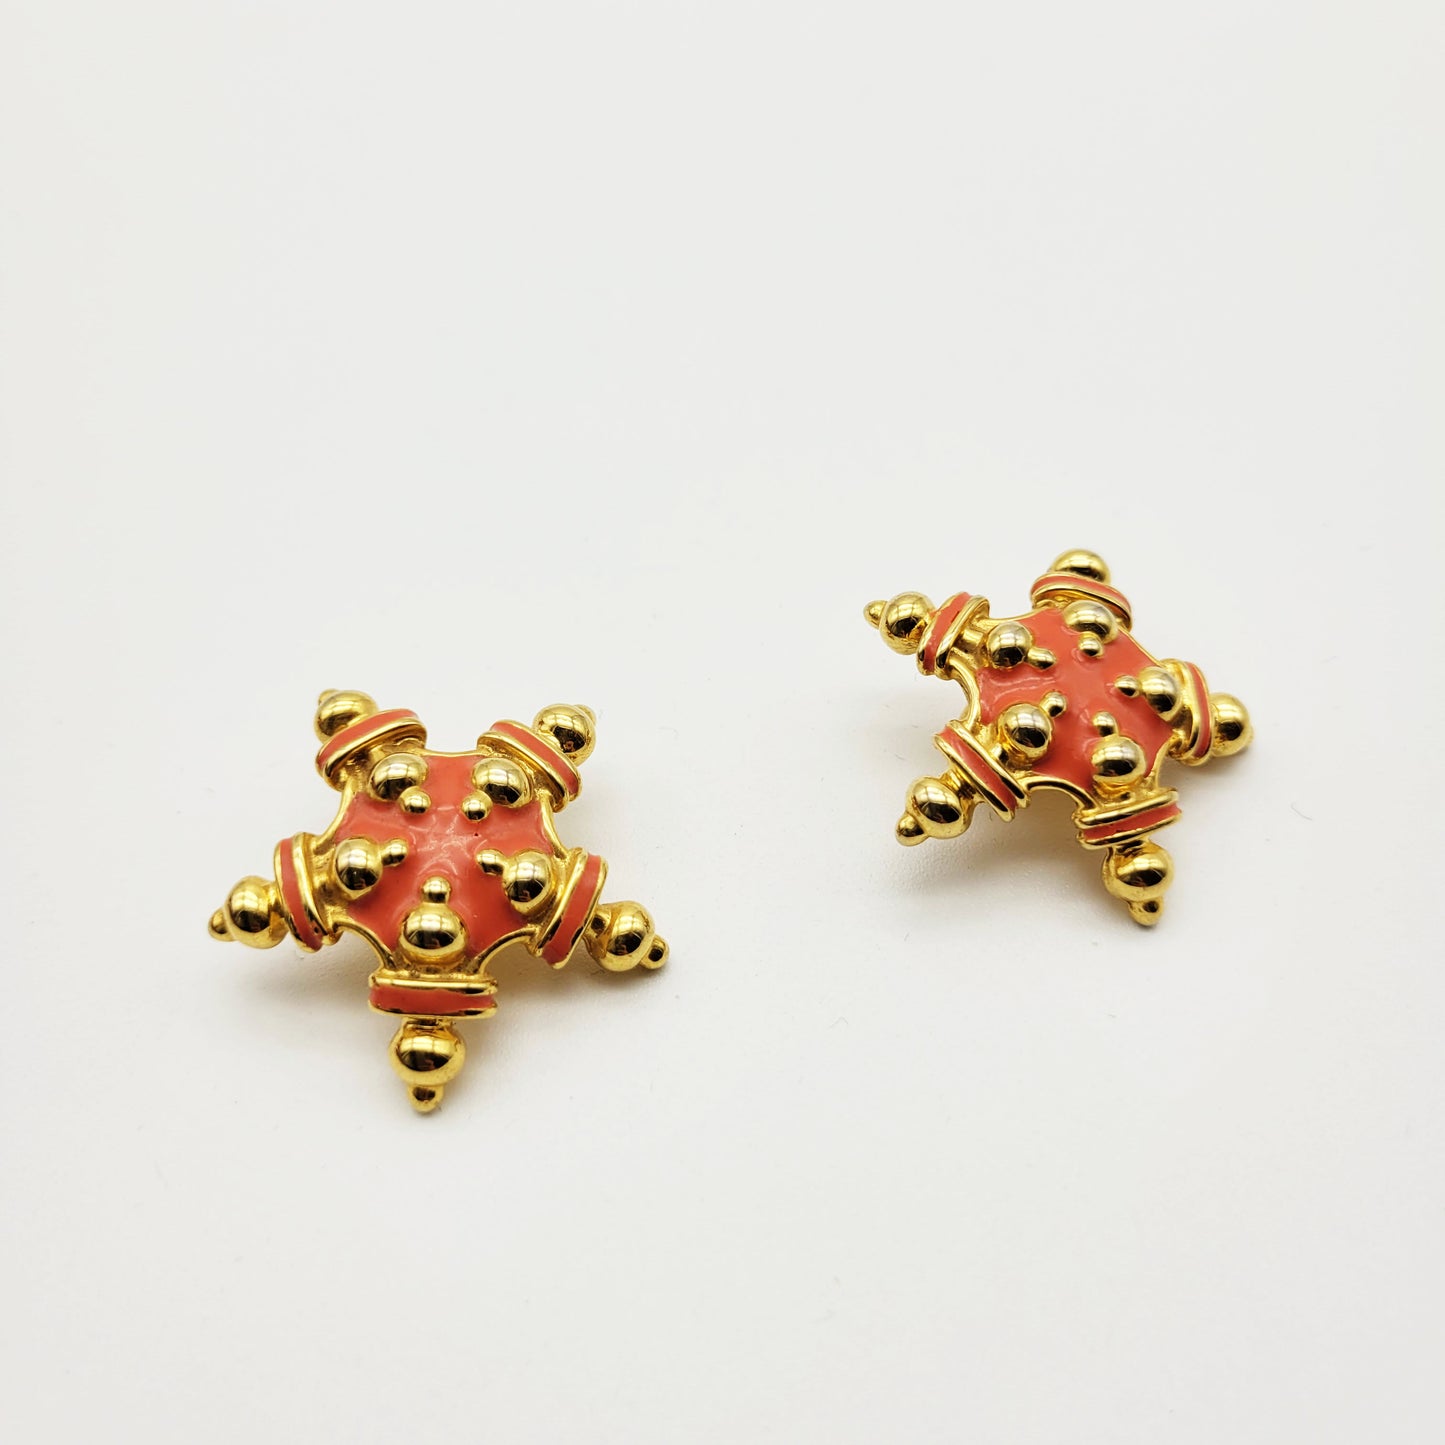 Vintage star earrings